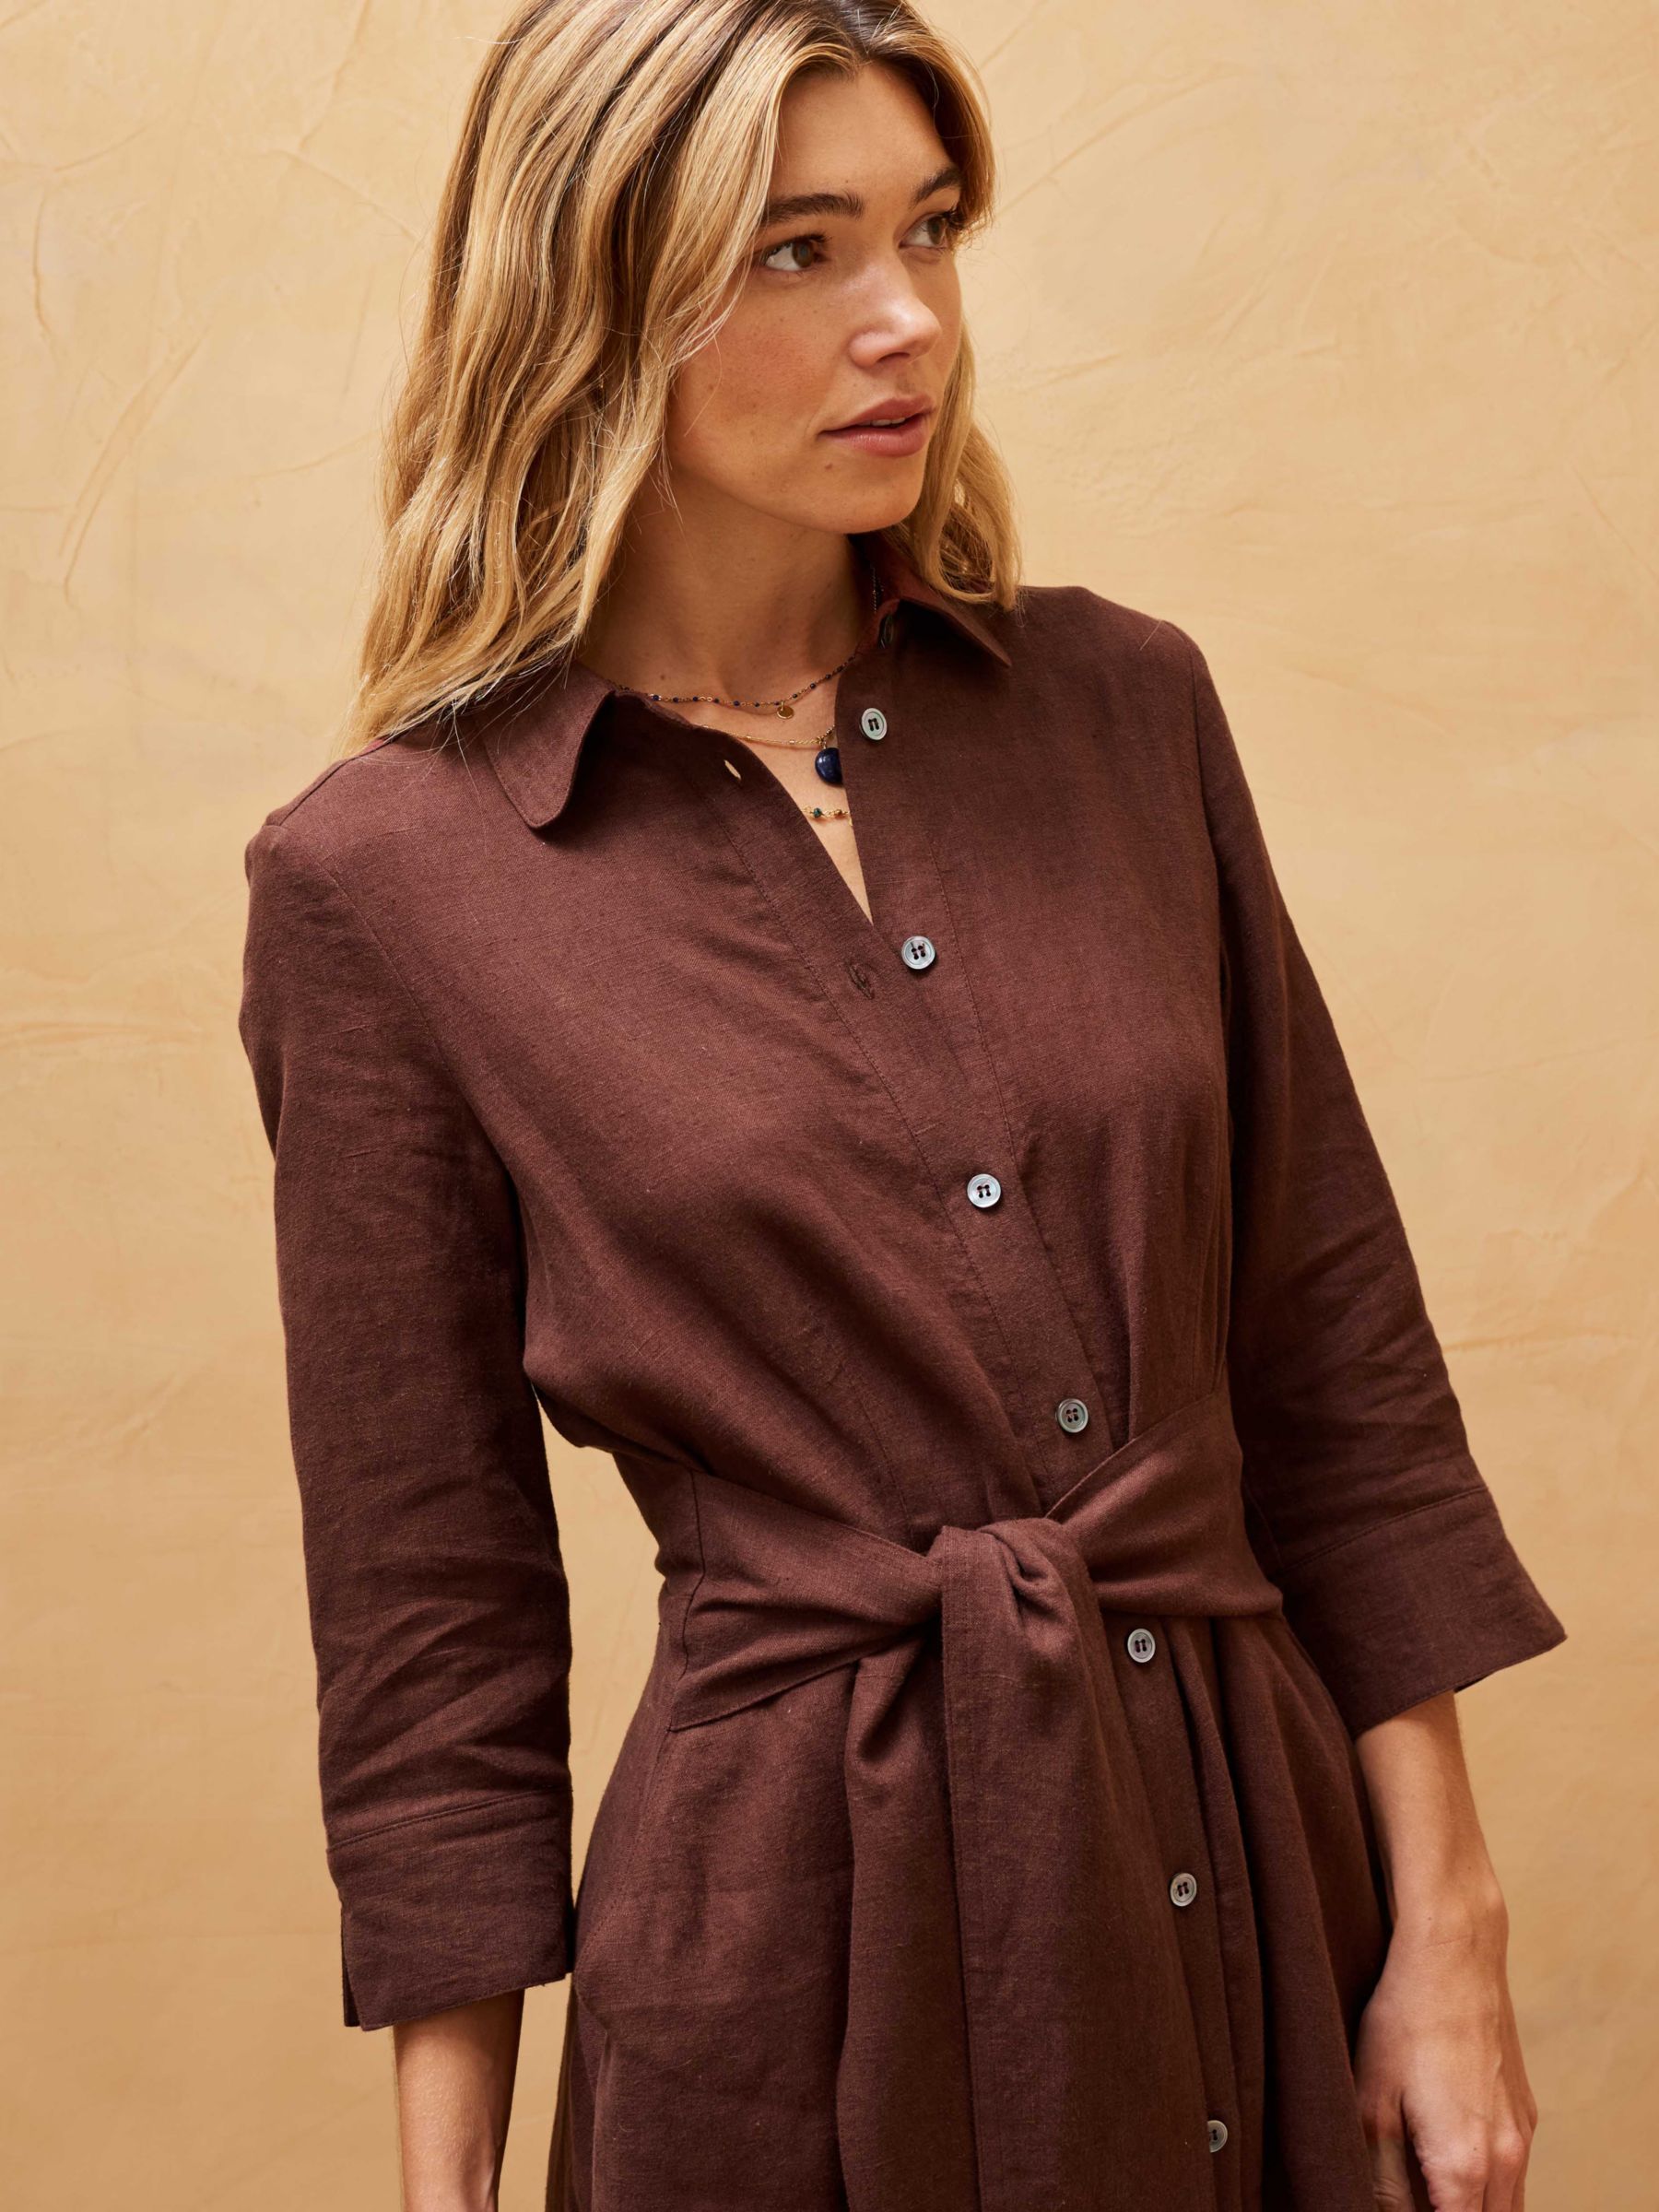 Brora Linen Midi Shirt Dress, Chocolate, 12